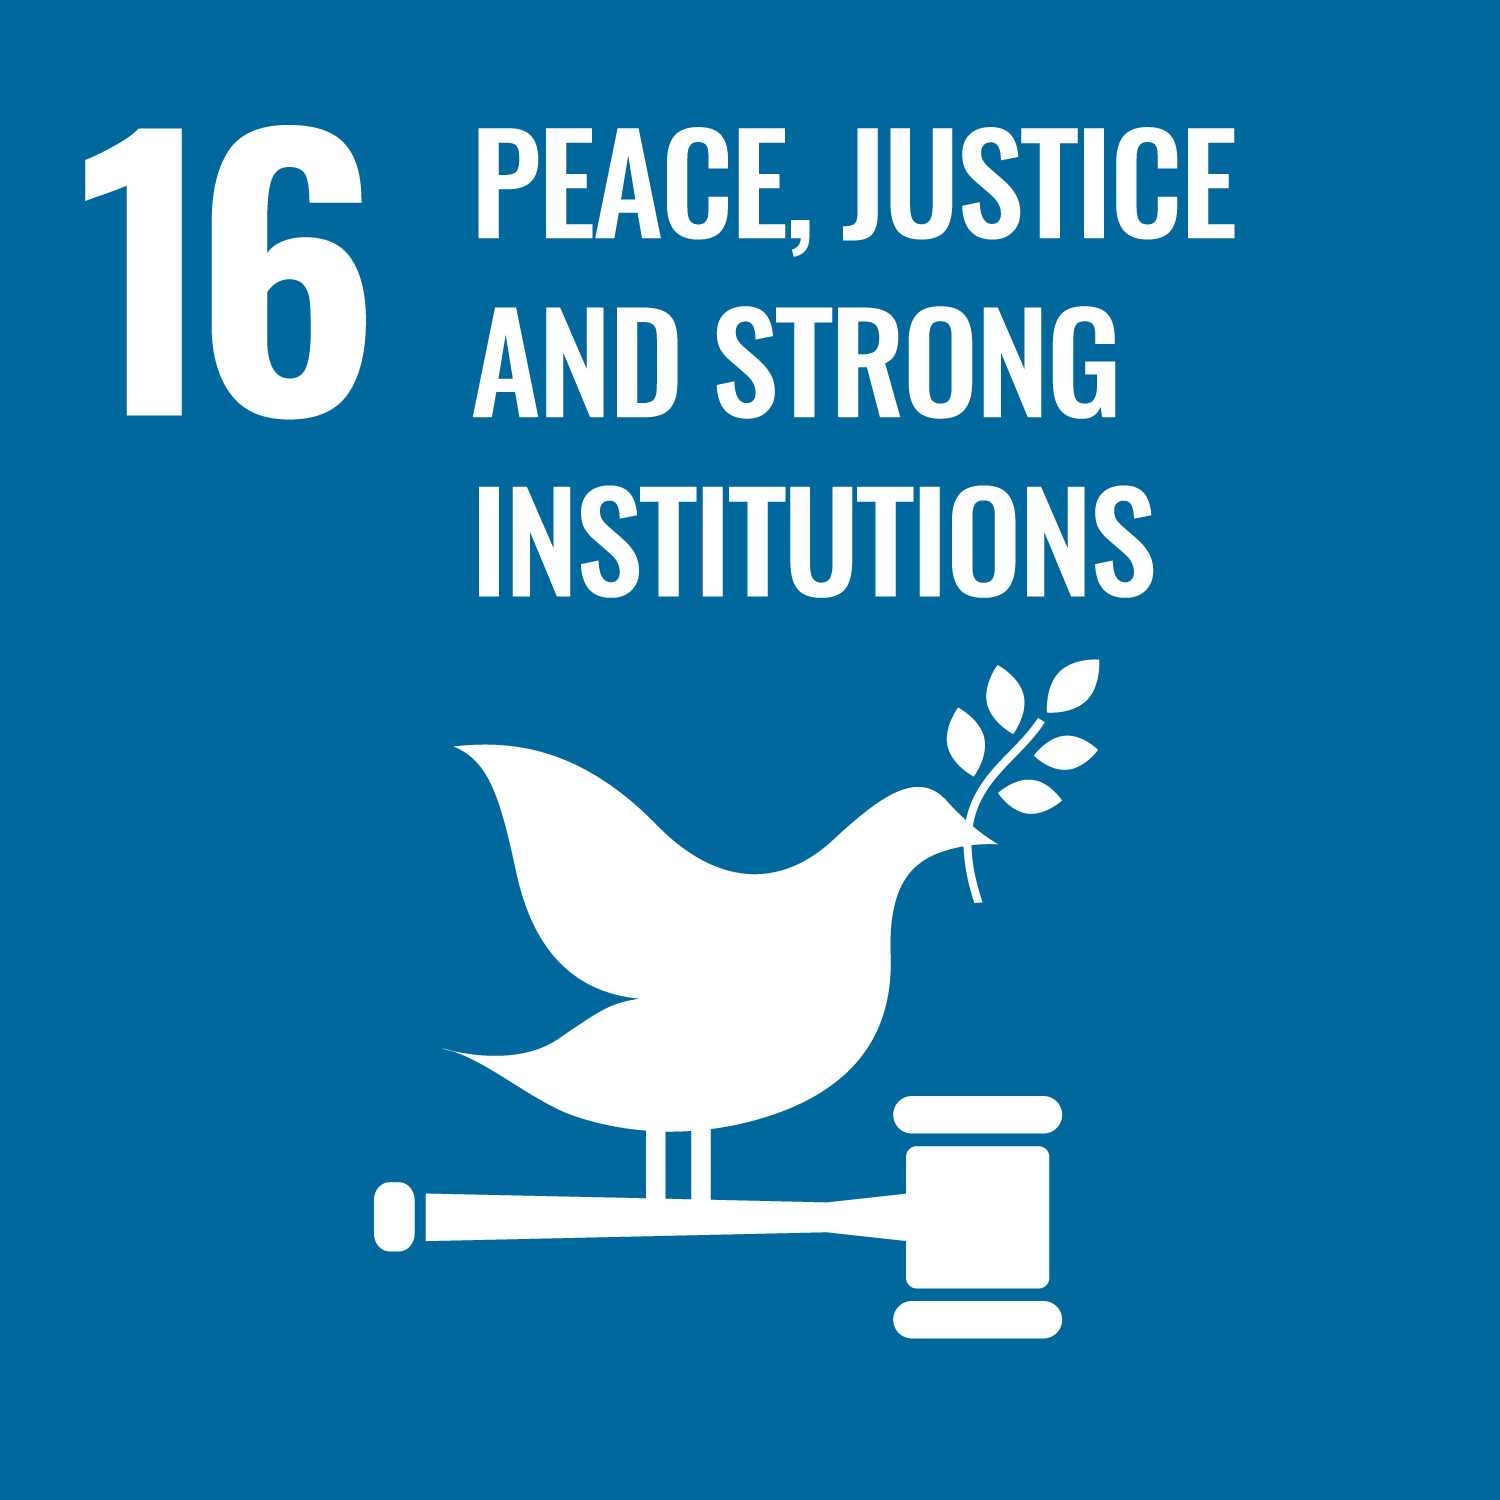 Weiße Schrift auf blauem Hintergrund: 16 Frieden, Gerechtigkeit und starke Institutionen, darunter ein Piktogramm einer Friedenstaube auf einem Richterhammer